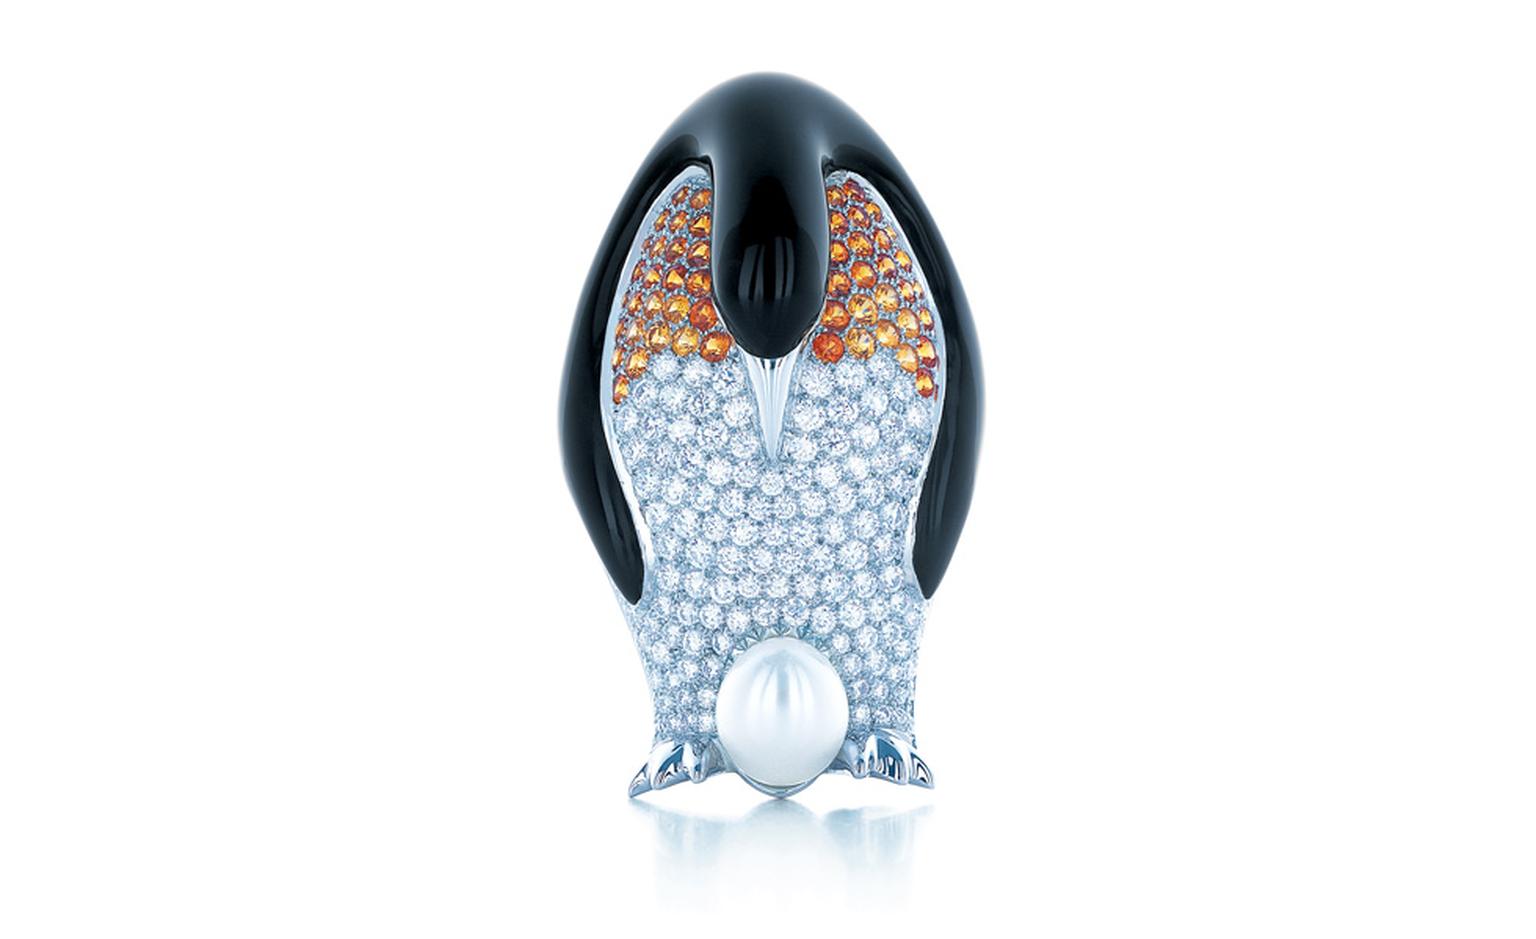 Tiffany & Co Penguin brooch